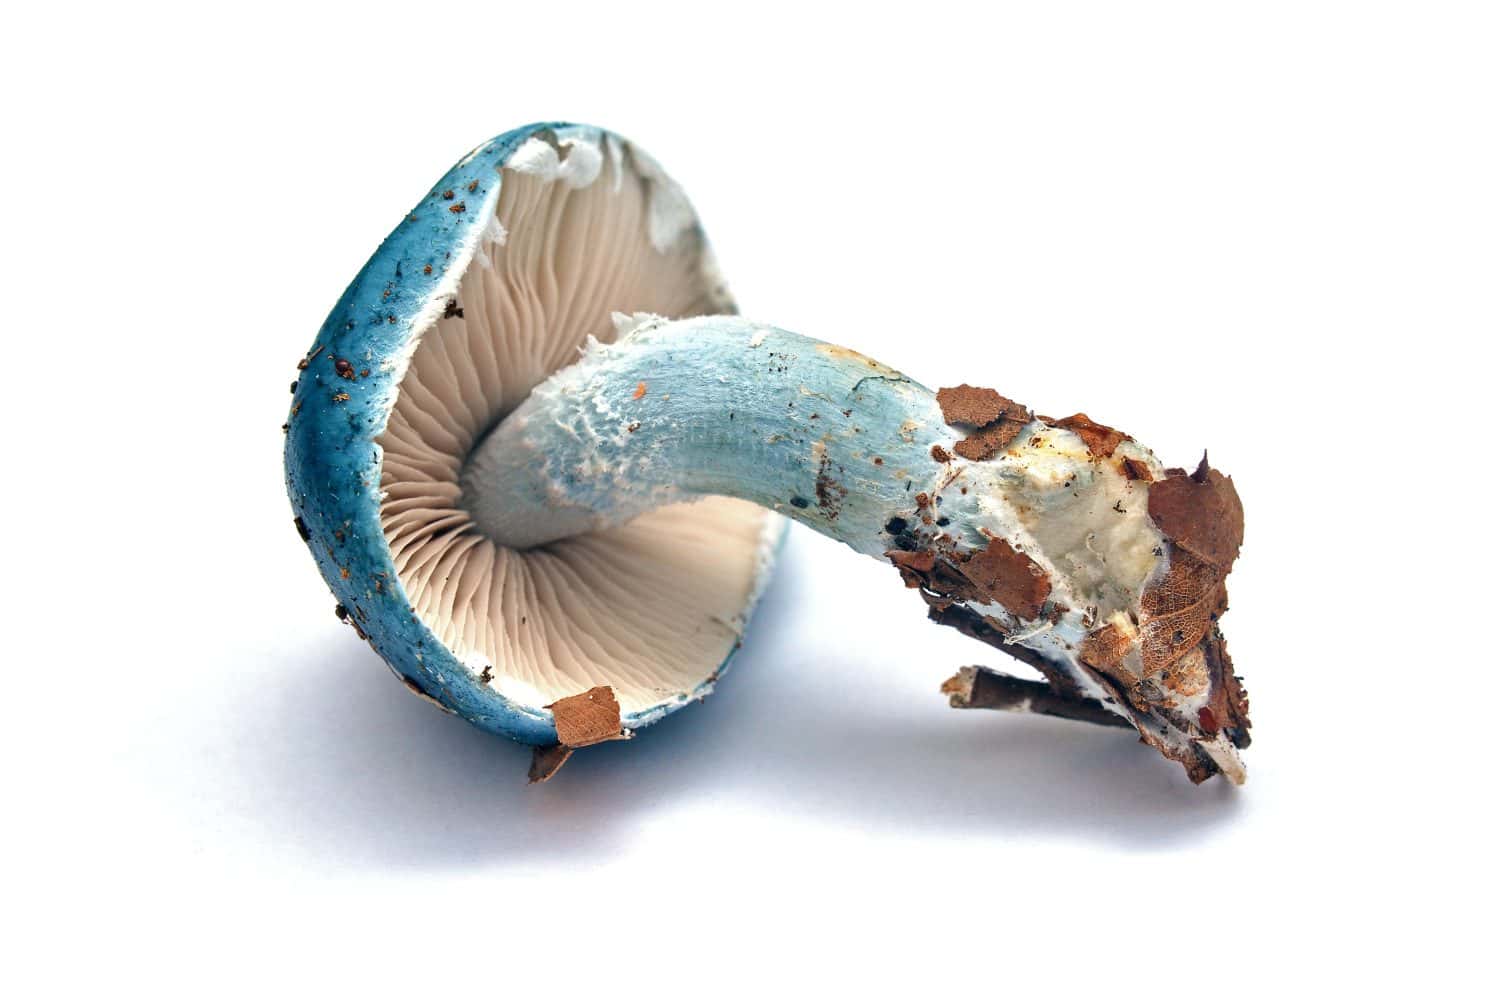 stropharia caerulea mushroom isolated on white, blue roundhead